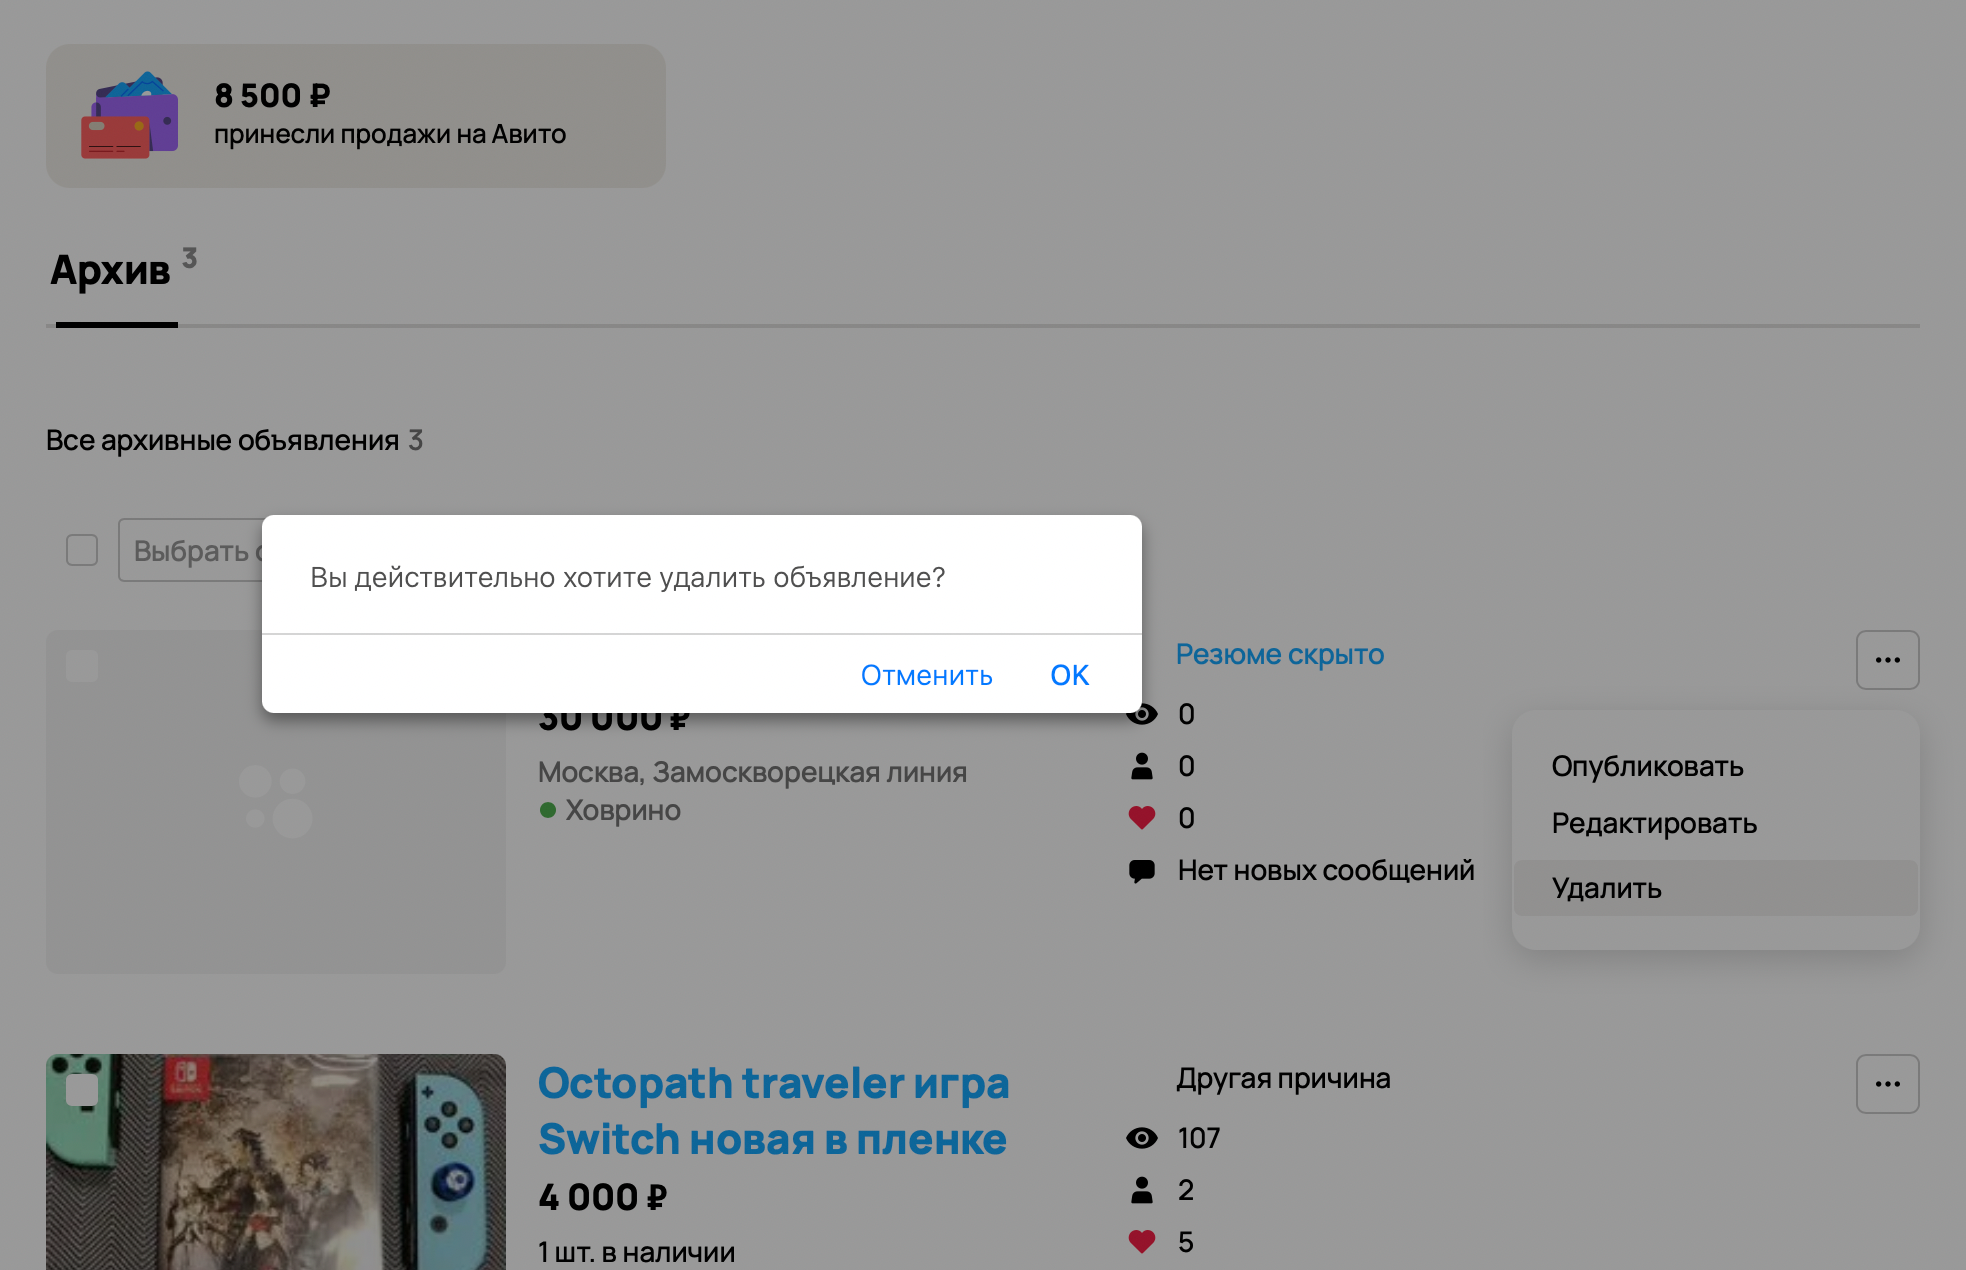 Инструкция, как удалить резюме на «Авито». Источник: avito.ru